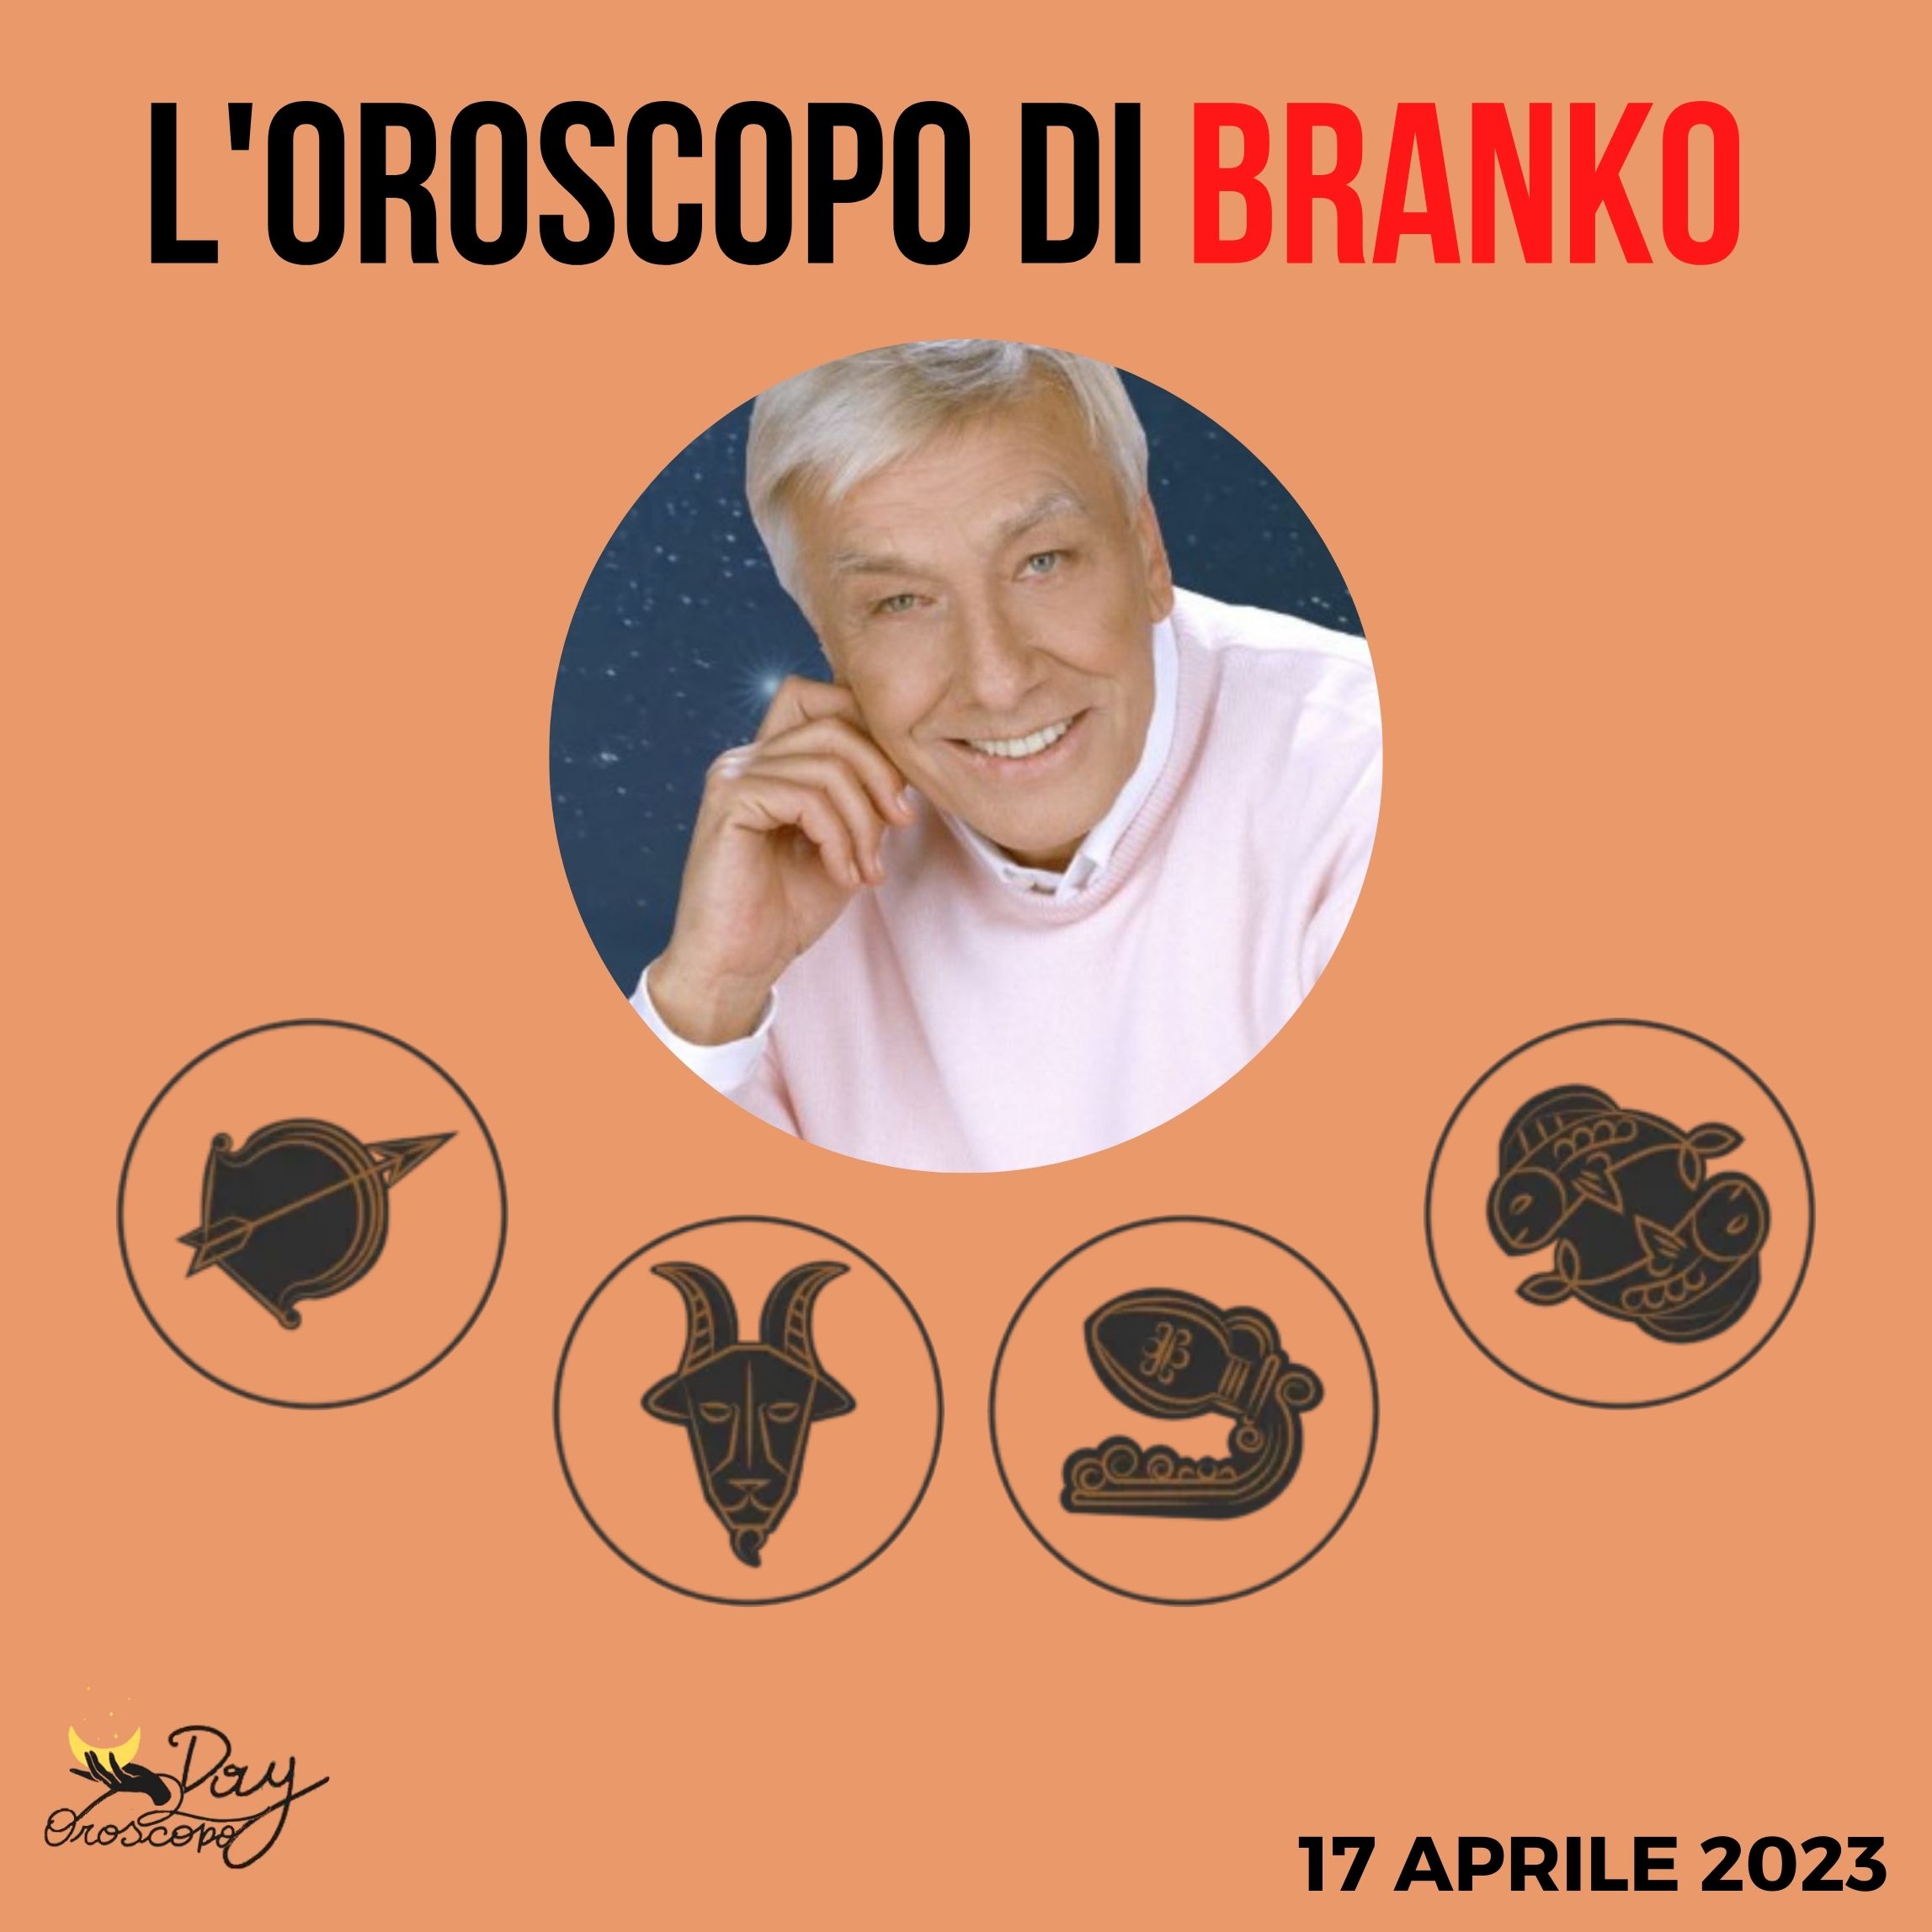 Oroscopo Branko 17 aprile 2023 Sagittario Capricorno Acquario Pesci